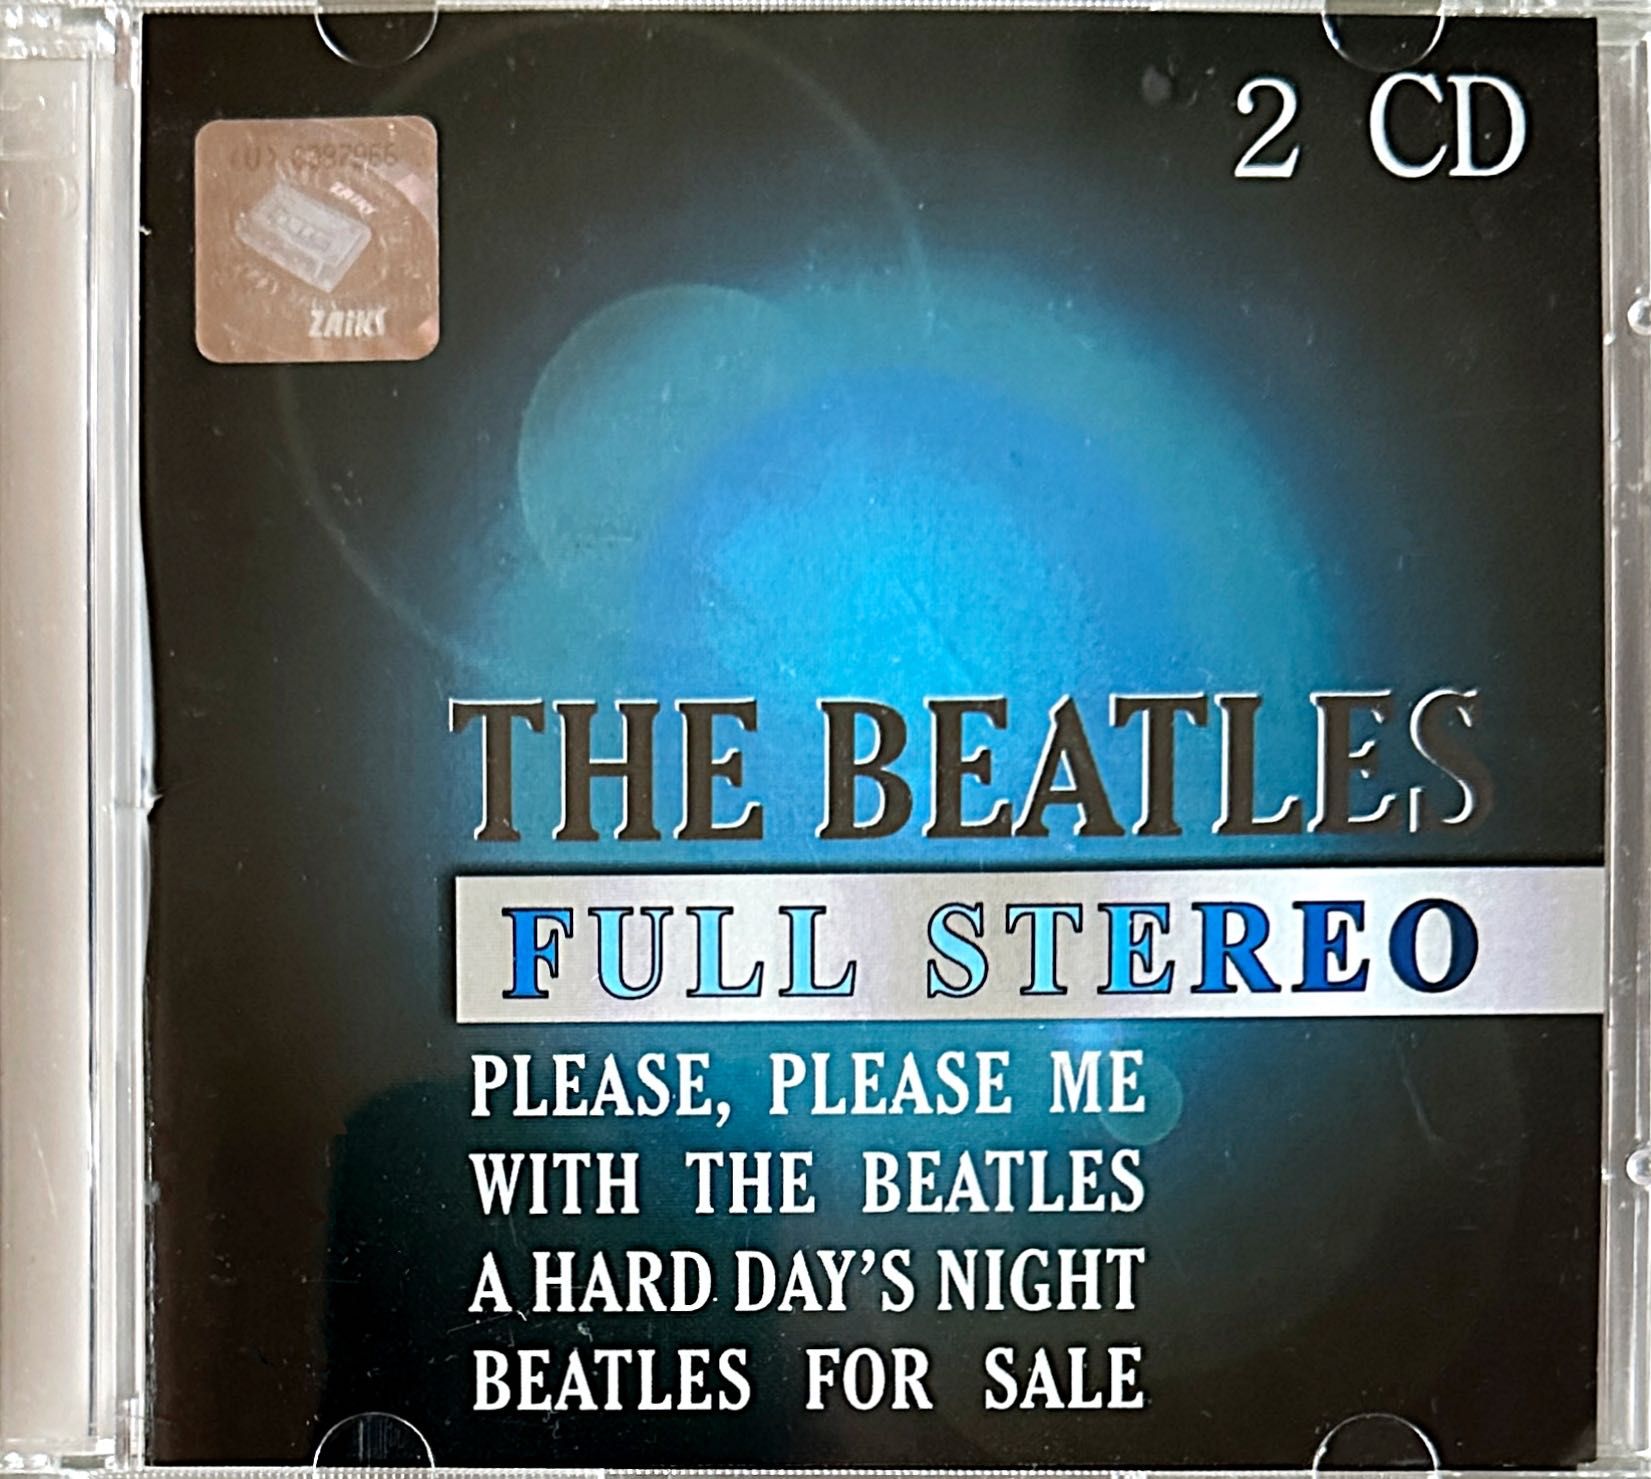 The Beatles Full Stereo cztery pierwsze albumy wydane na dwóch CD